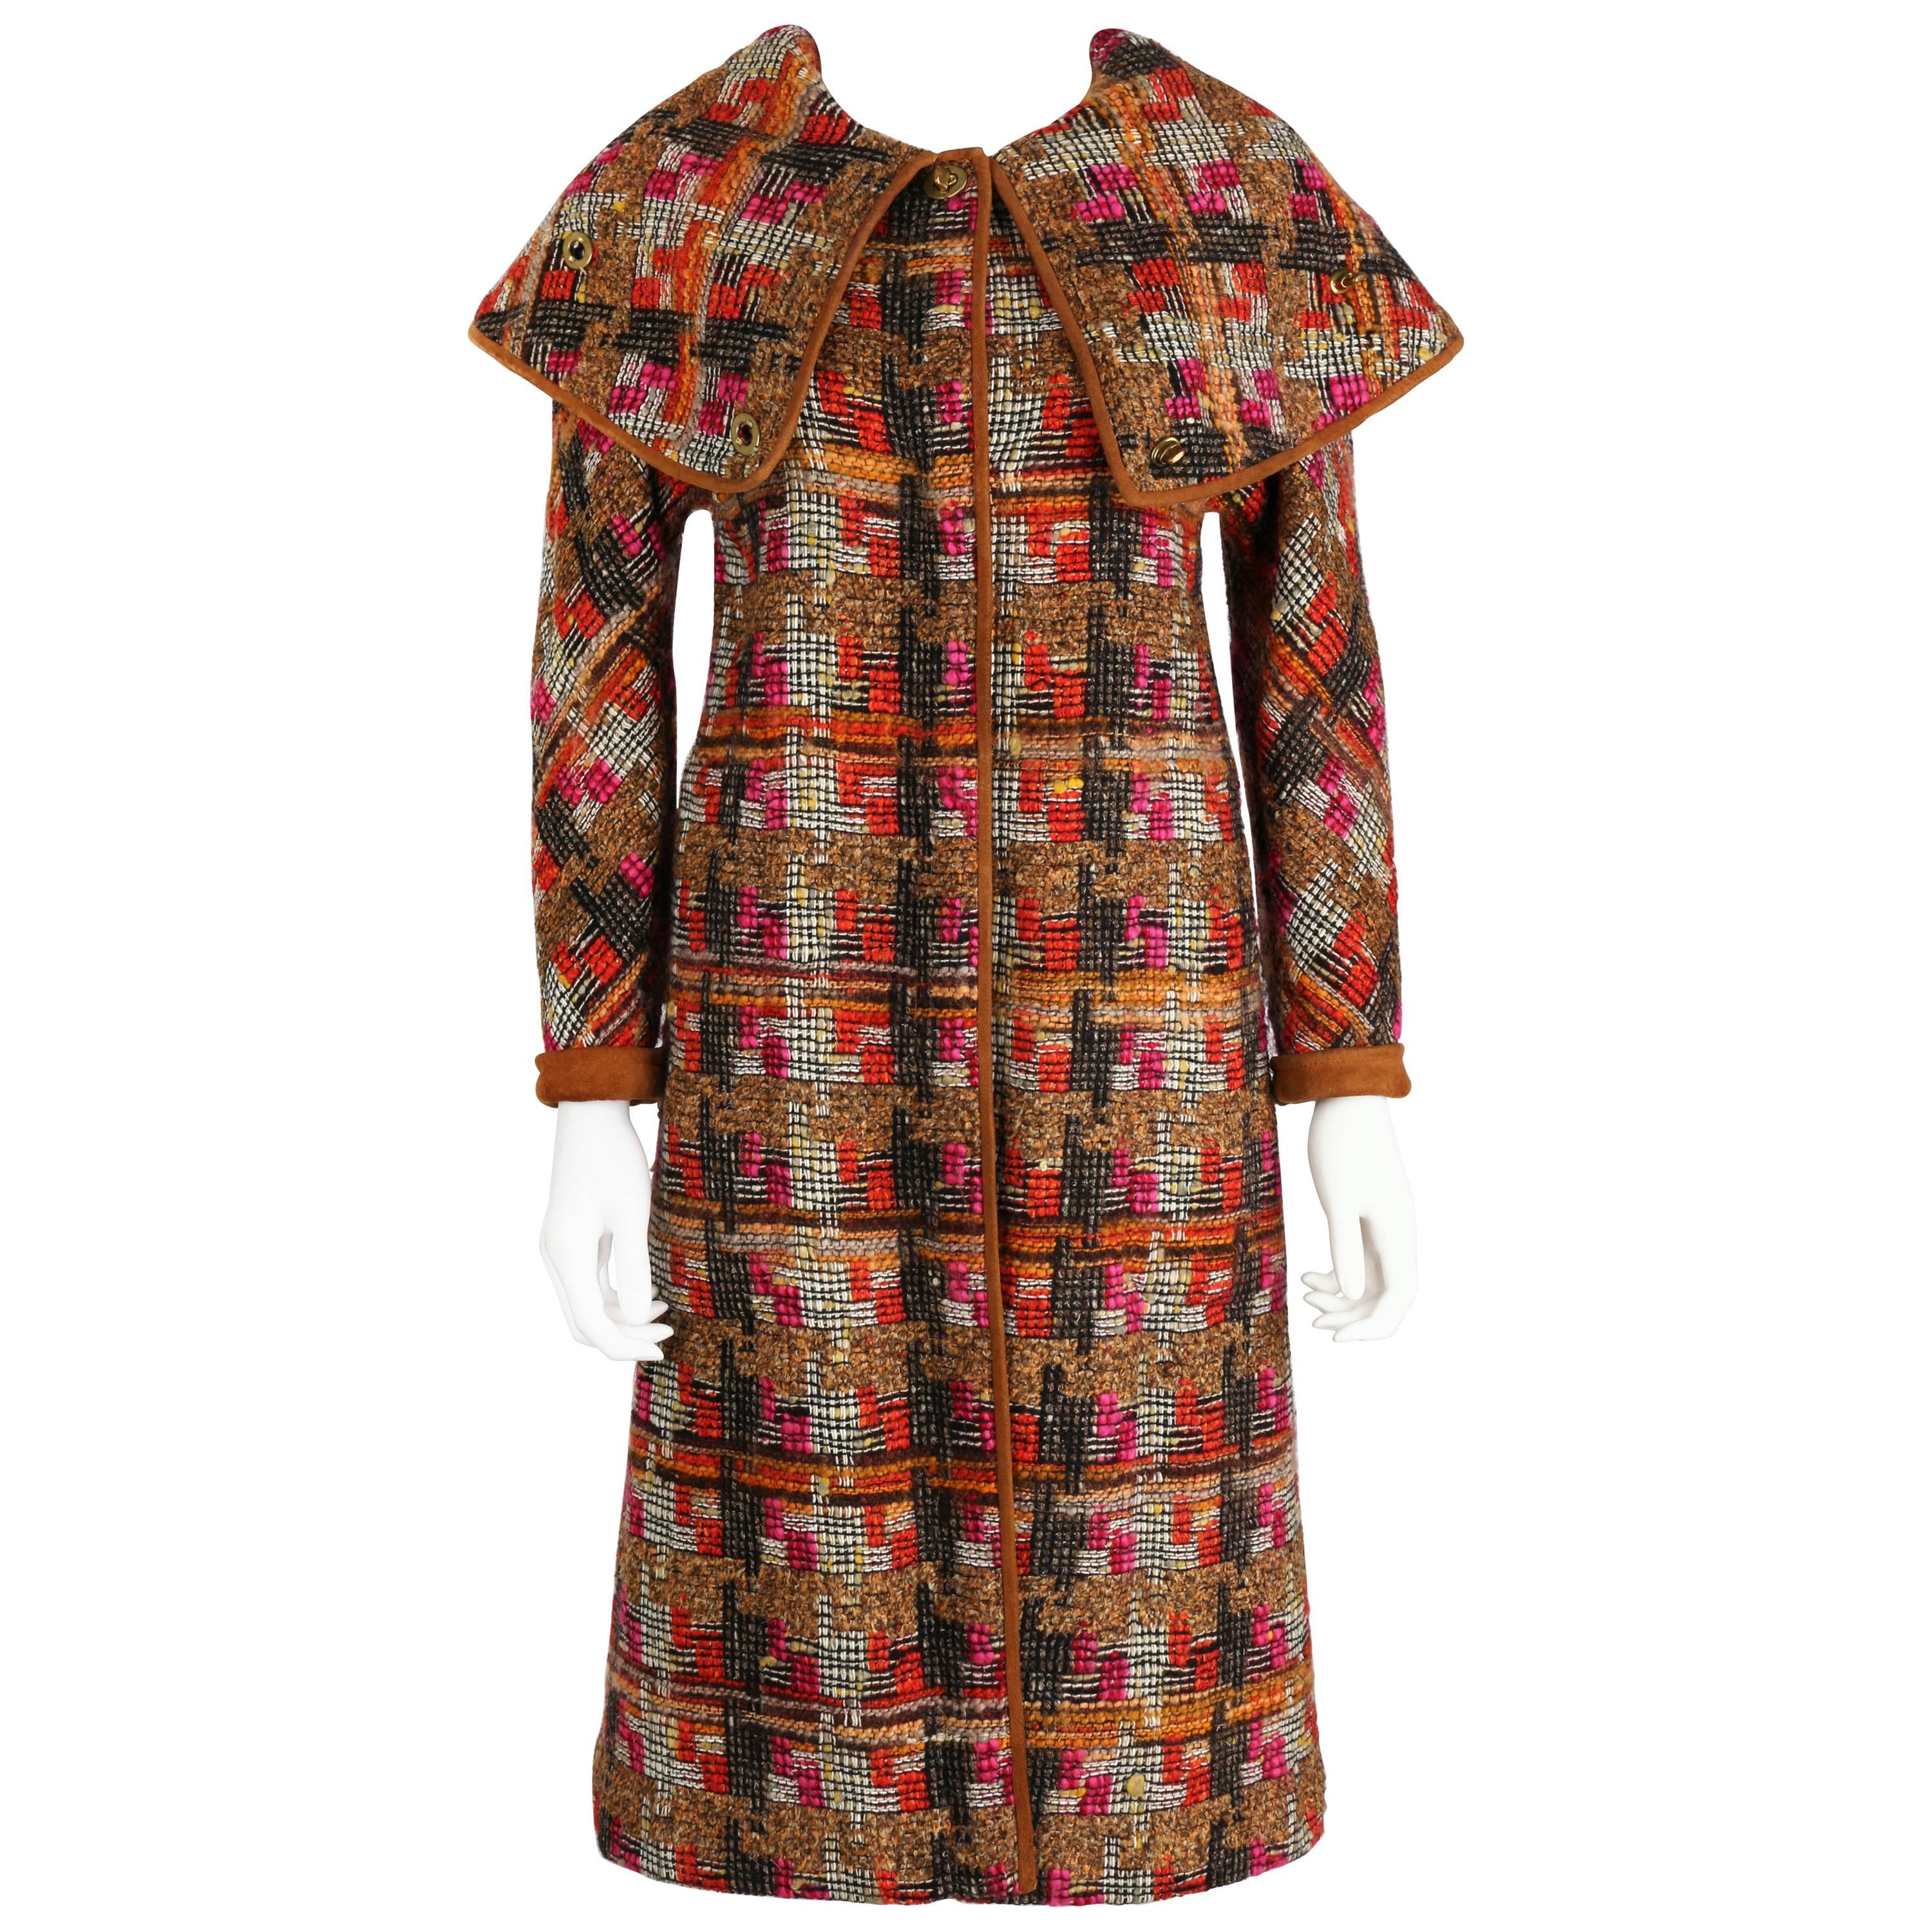 BONNIE CASHIN 1960s SILLS Multi-color Tweed Suede Long Cape Coat Size XS / S